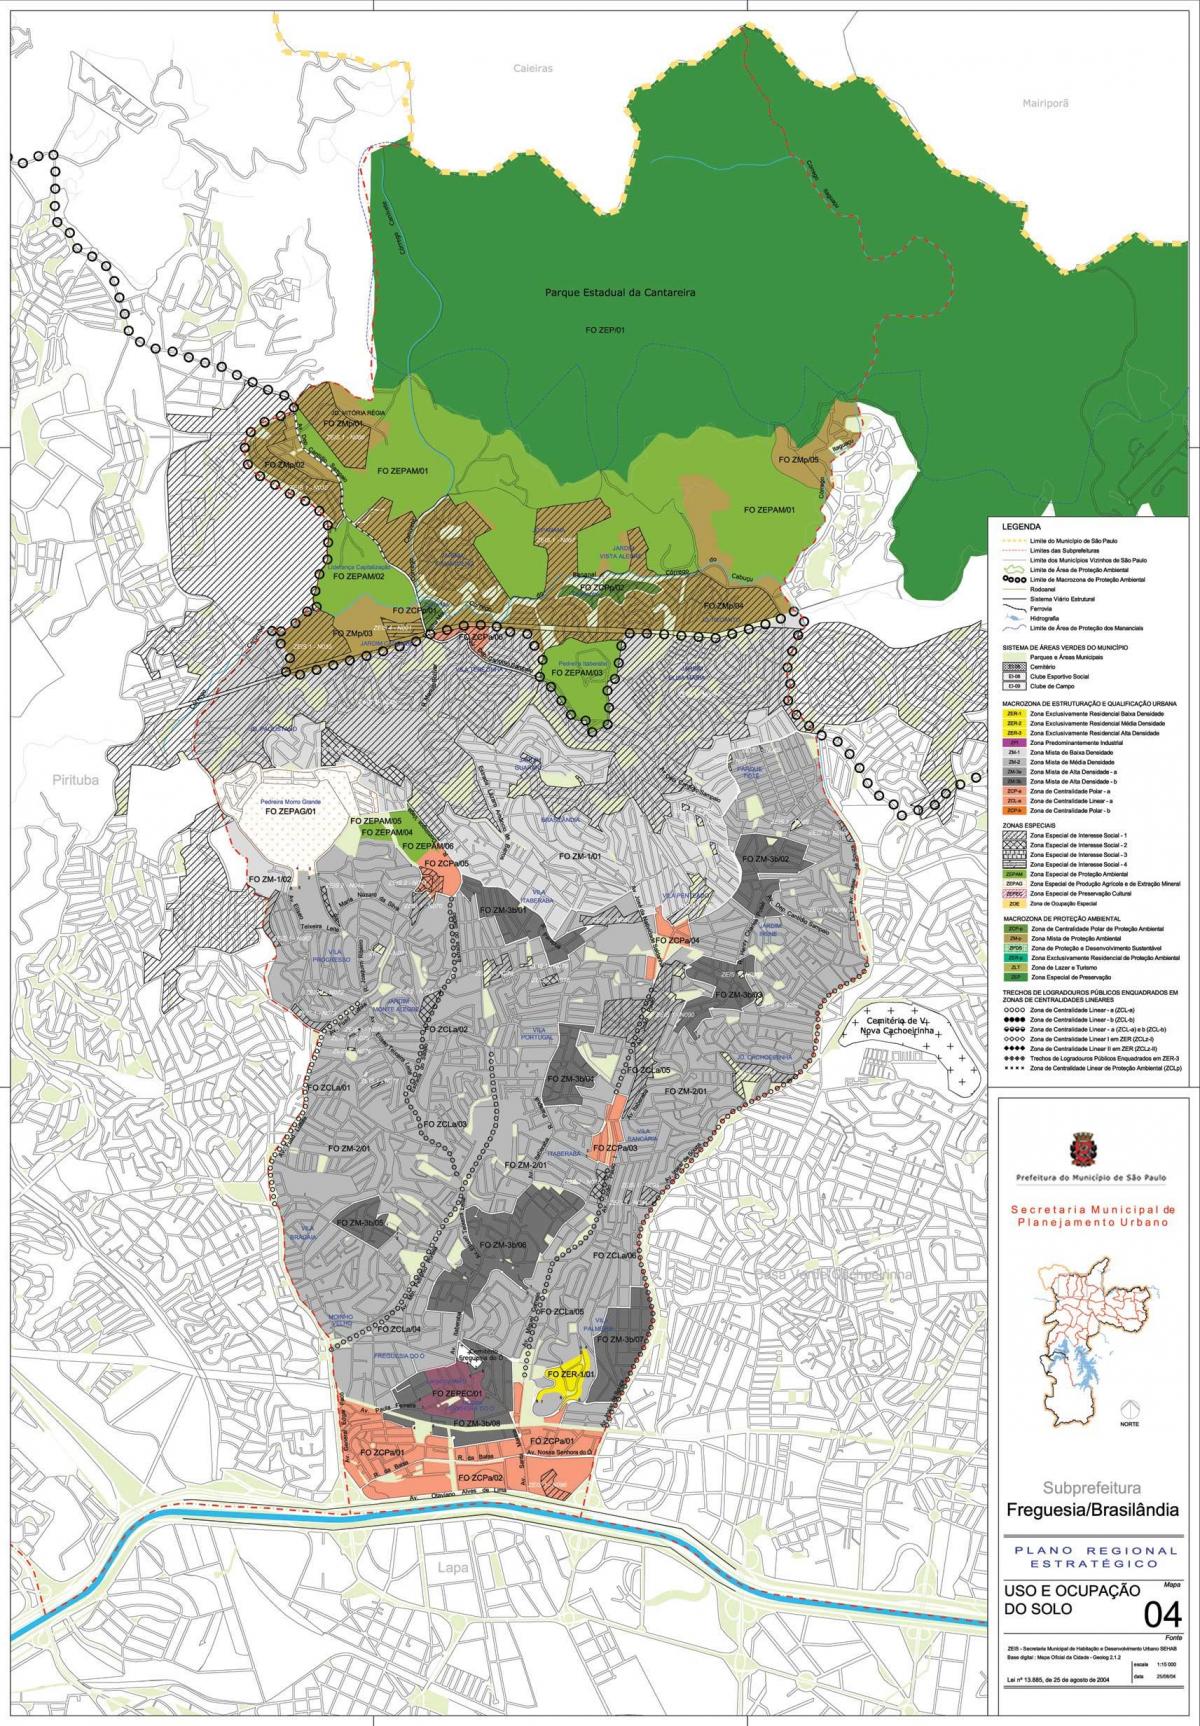 Mapa da Freguesia do Ó São Paulo - Ocupação do solo